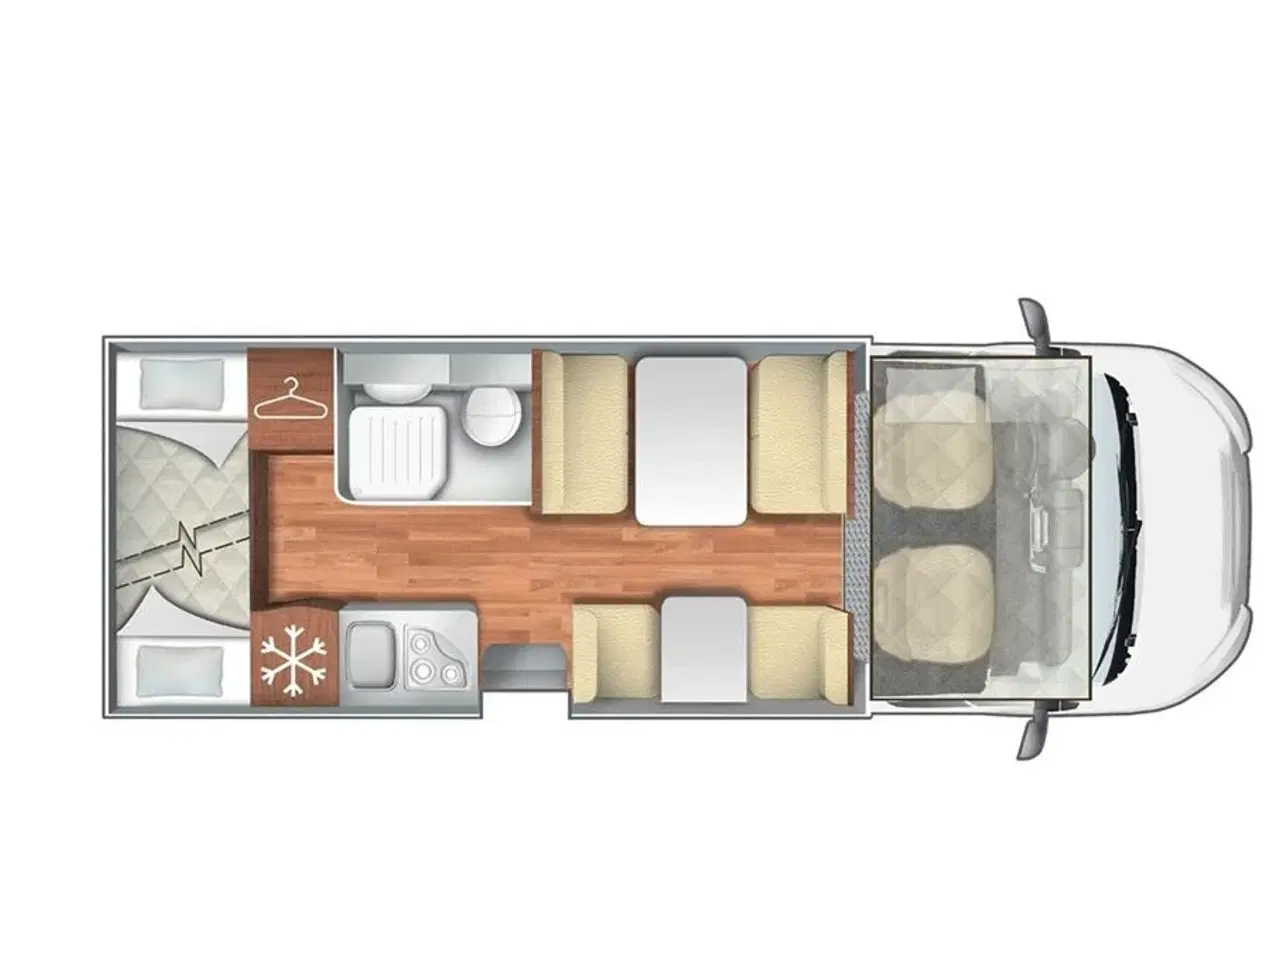 Billede 23 - 2020 - Rollerteam Kronos 277M   7. S. selepladser og 7 sovepladser - en rigtig familie vogn med masser af plads